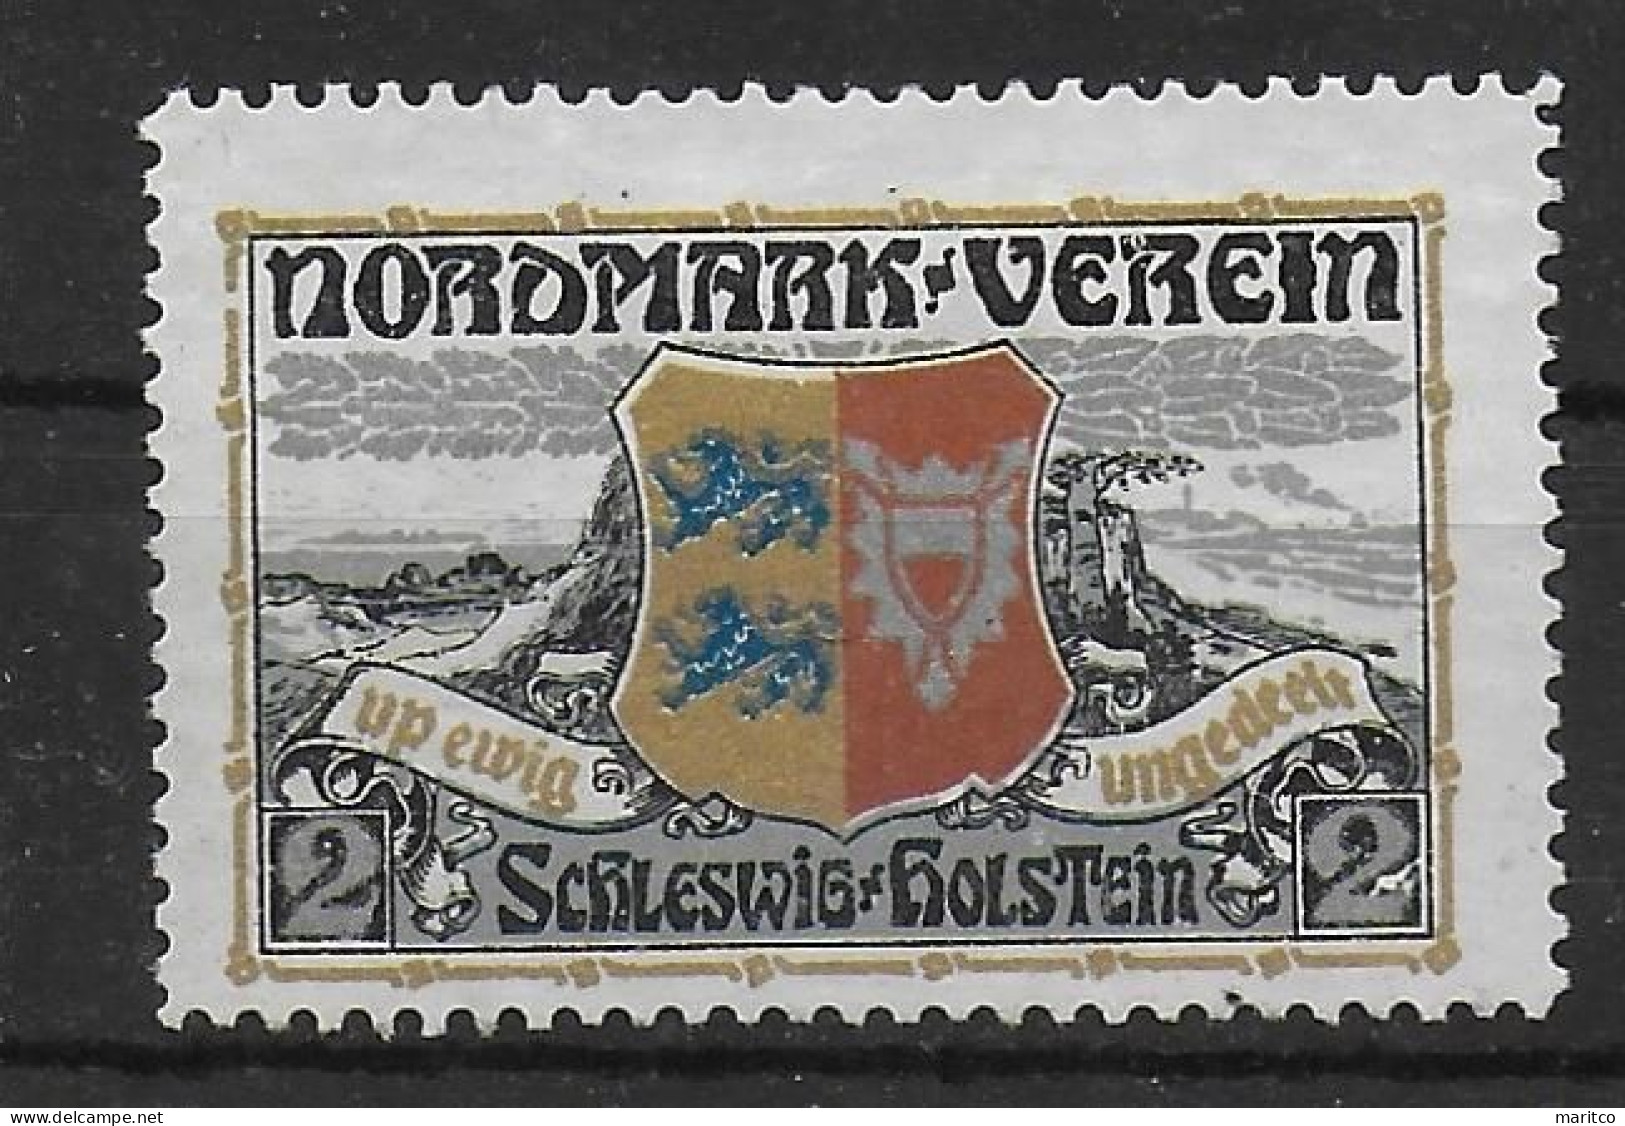 Deutsches Reich Schleswig 1911 Wehrschatz Nordmarkverein Spendenmarke Cinderella Vignet Werbemarke Propaganda - Fantasie Vignetten